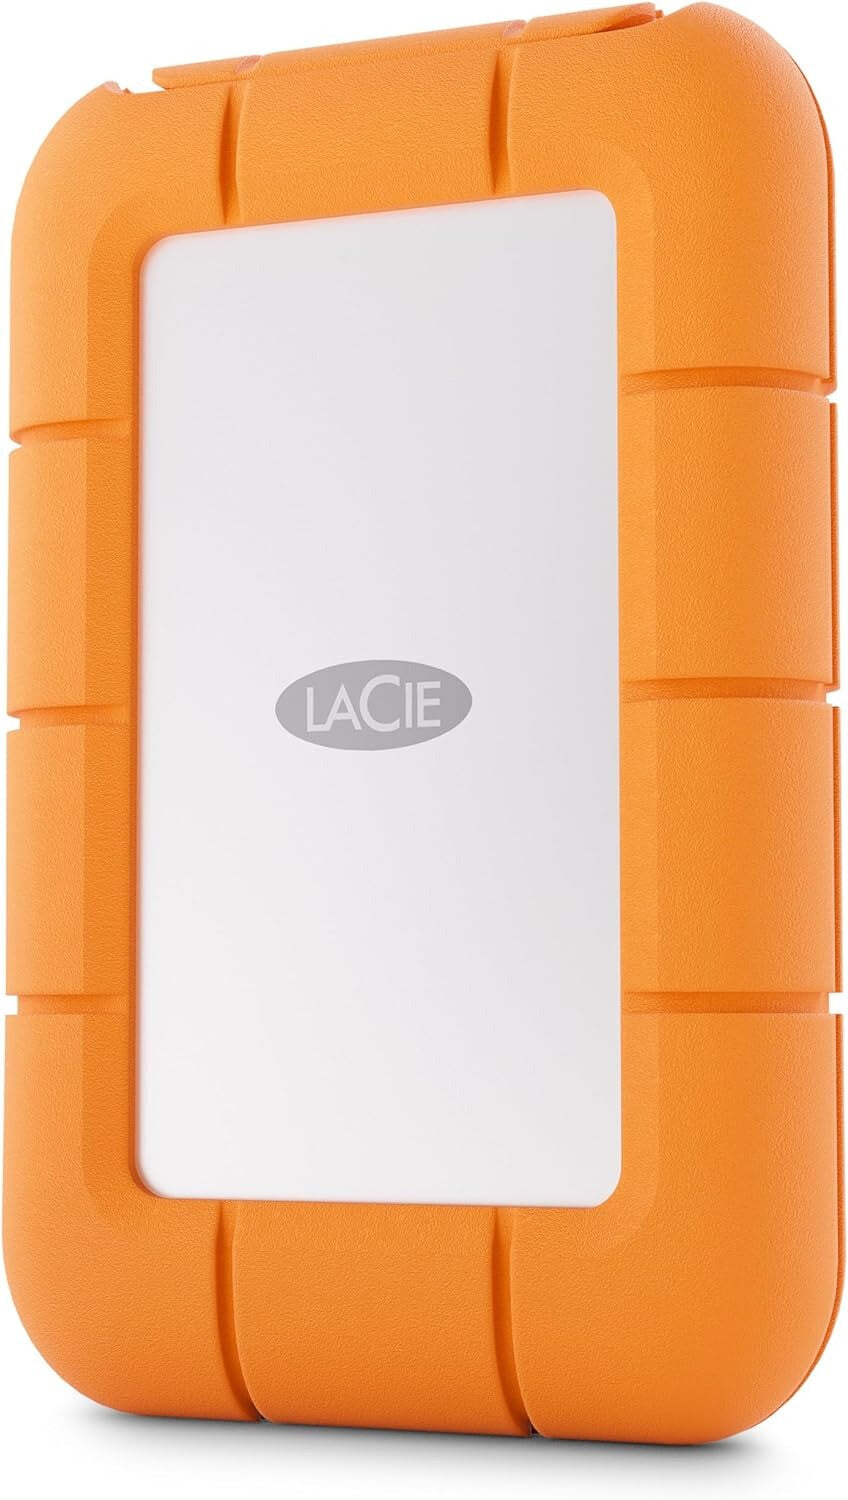 LaCie Rugged - USB-C External HDD in Orange - 1 TB